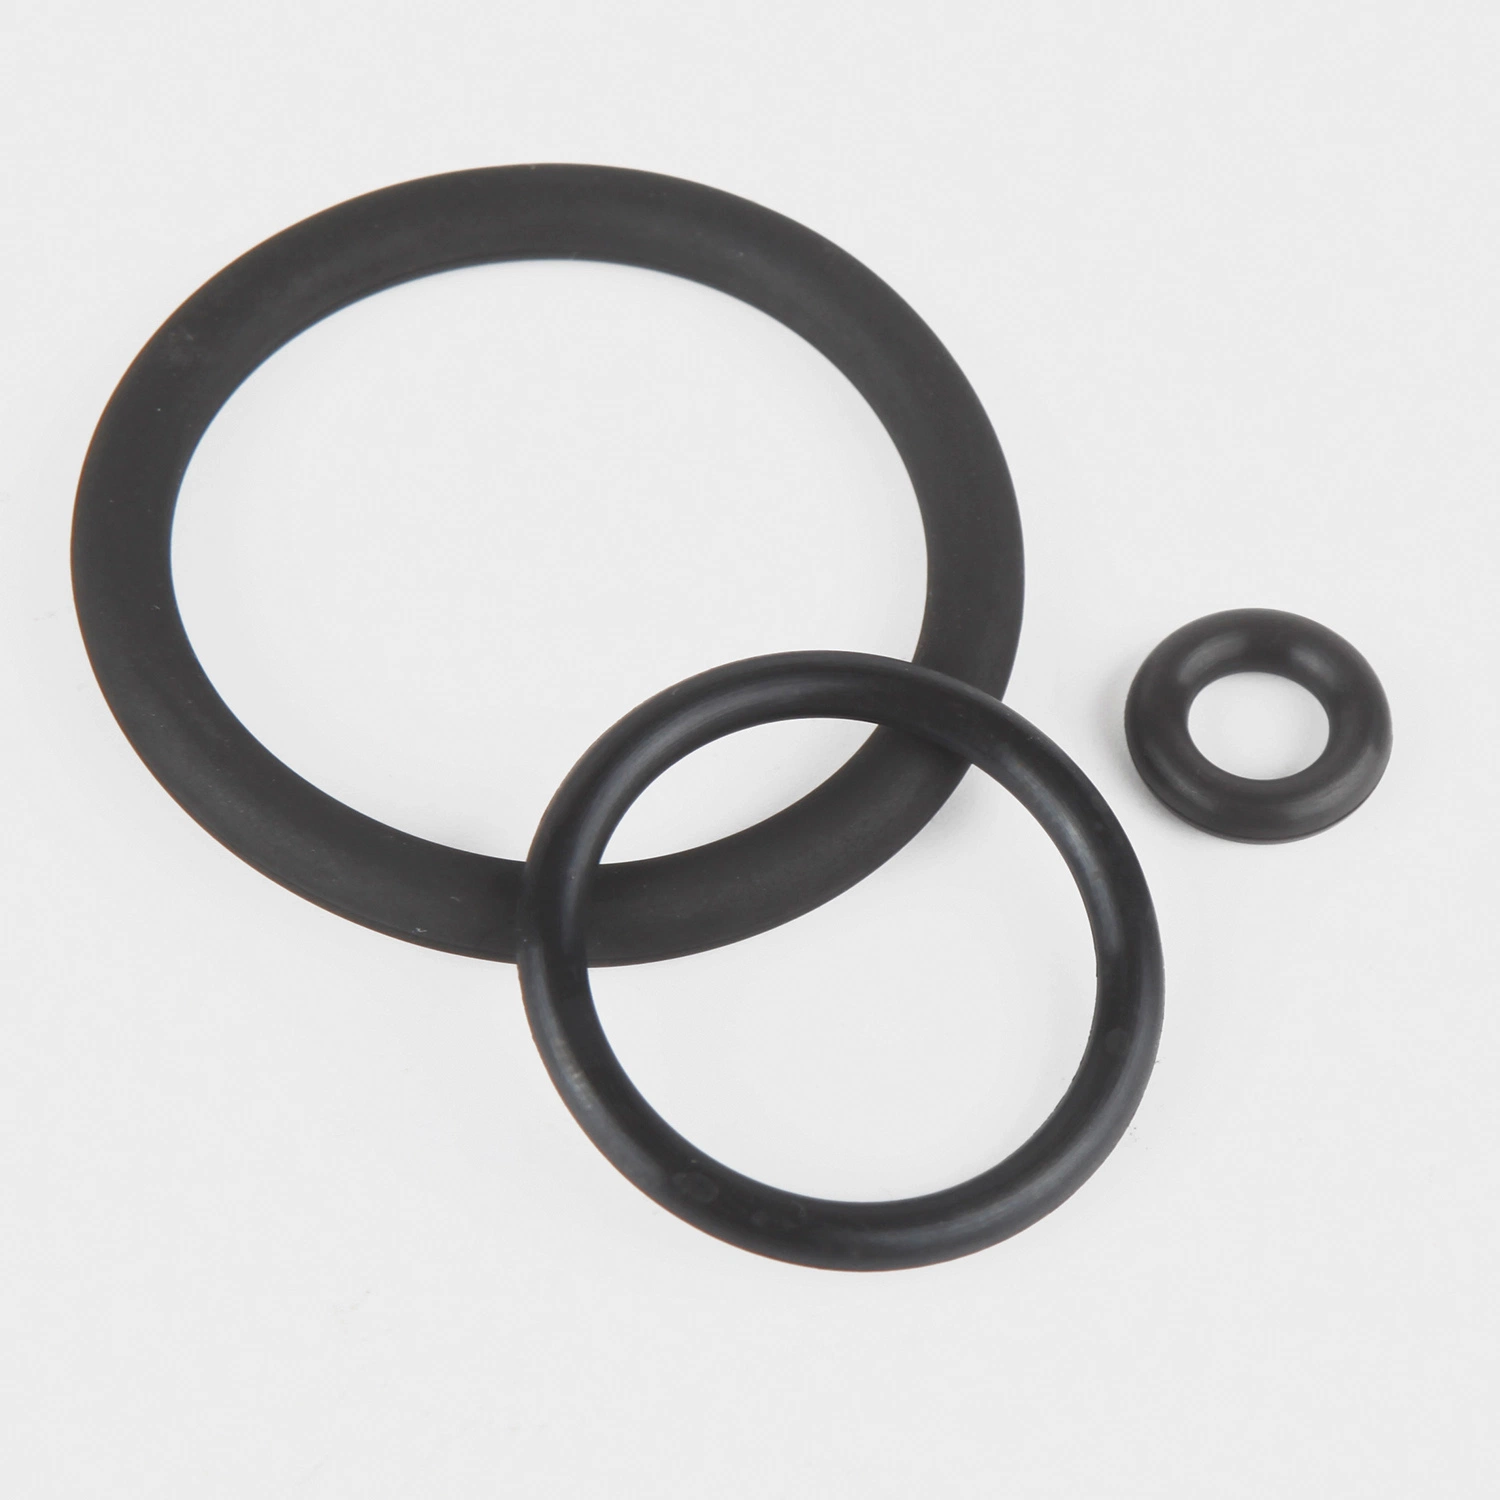 Vedante circular de borracha VMQ, de todos os tamanhos, de grau alimentar preto O-ring de silicone